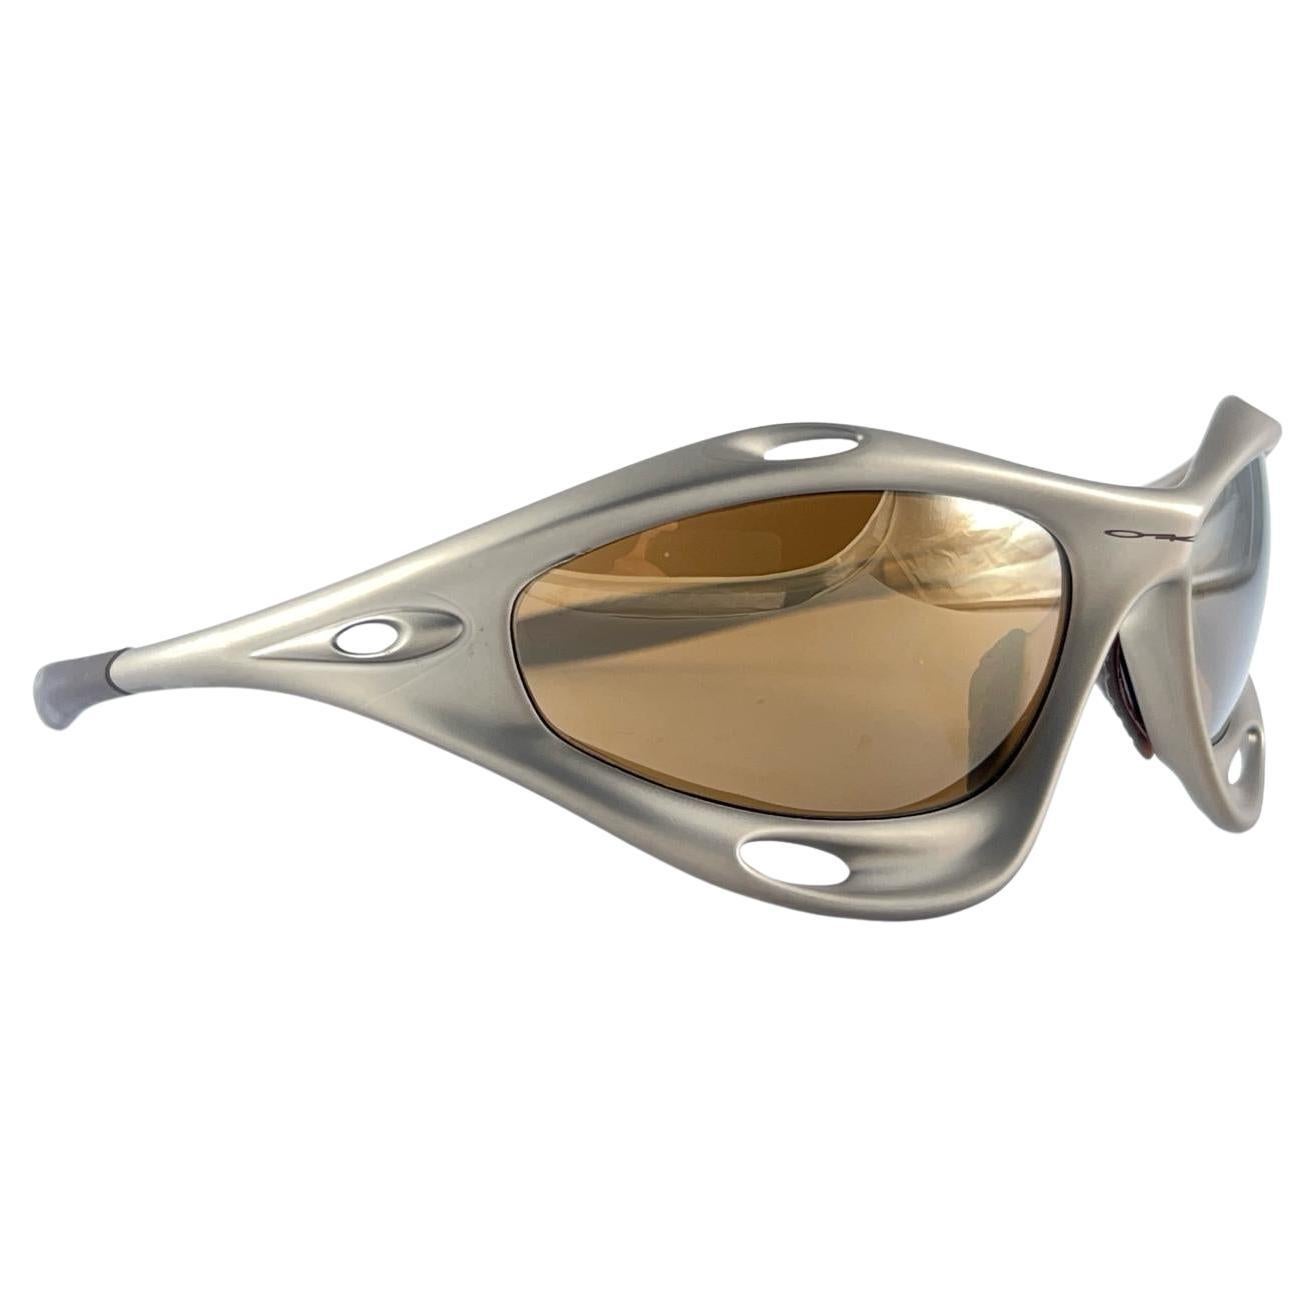 
New Vintage By sind Oakley-Sonnenbrillen. Wrap-Sportbrille mit goldenen Iridium-Gläsern.
Neu, nie getragen oder ausgestellt. Dieser Artikel kann aufgrund der Lagerung leichte Gebrauchsspuren aufweisen.
Leider keine Box. 
Hergestellt in Usa